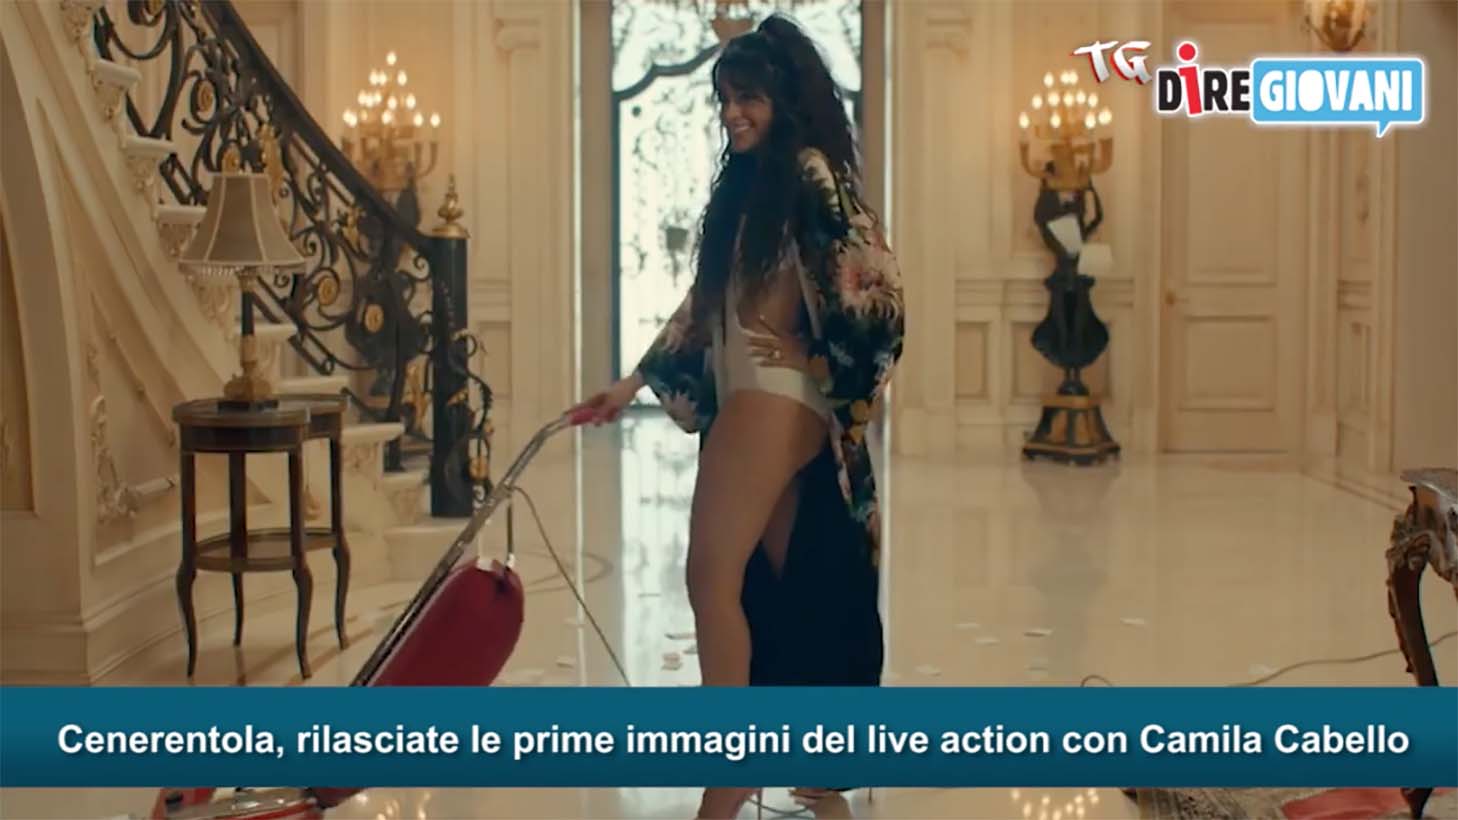 Tg DireGiovani, arriva Cenerentola: il Live Action con Camilla Cabello